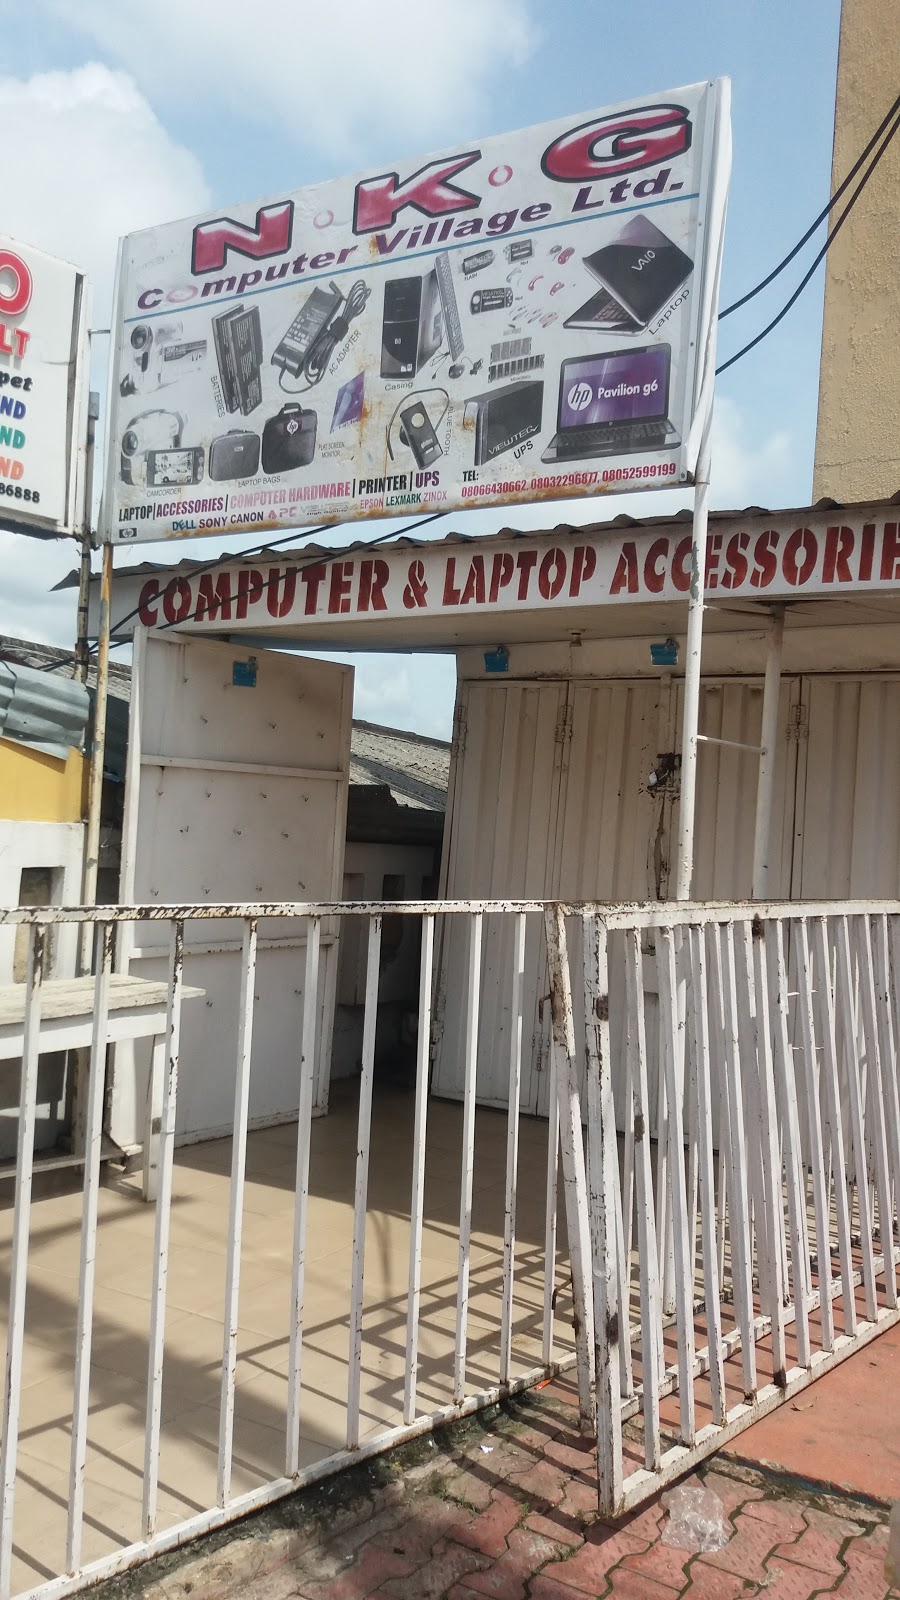 N.K.G. Computer Village Ltd.